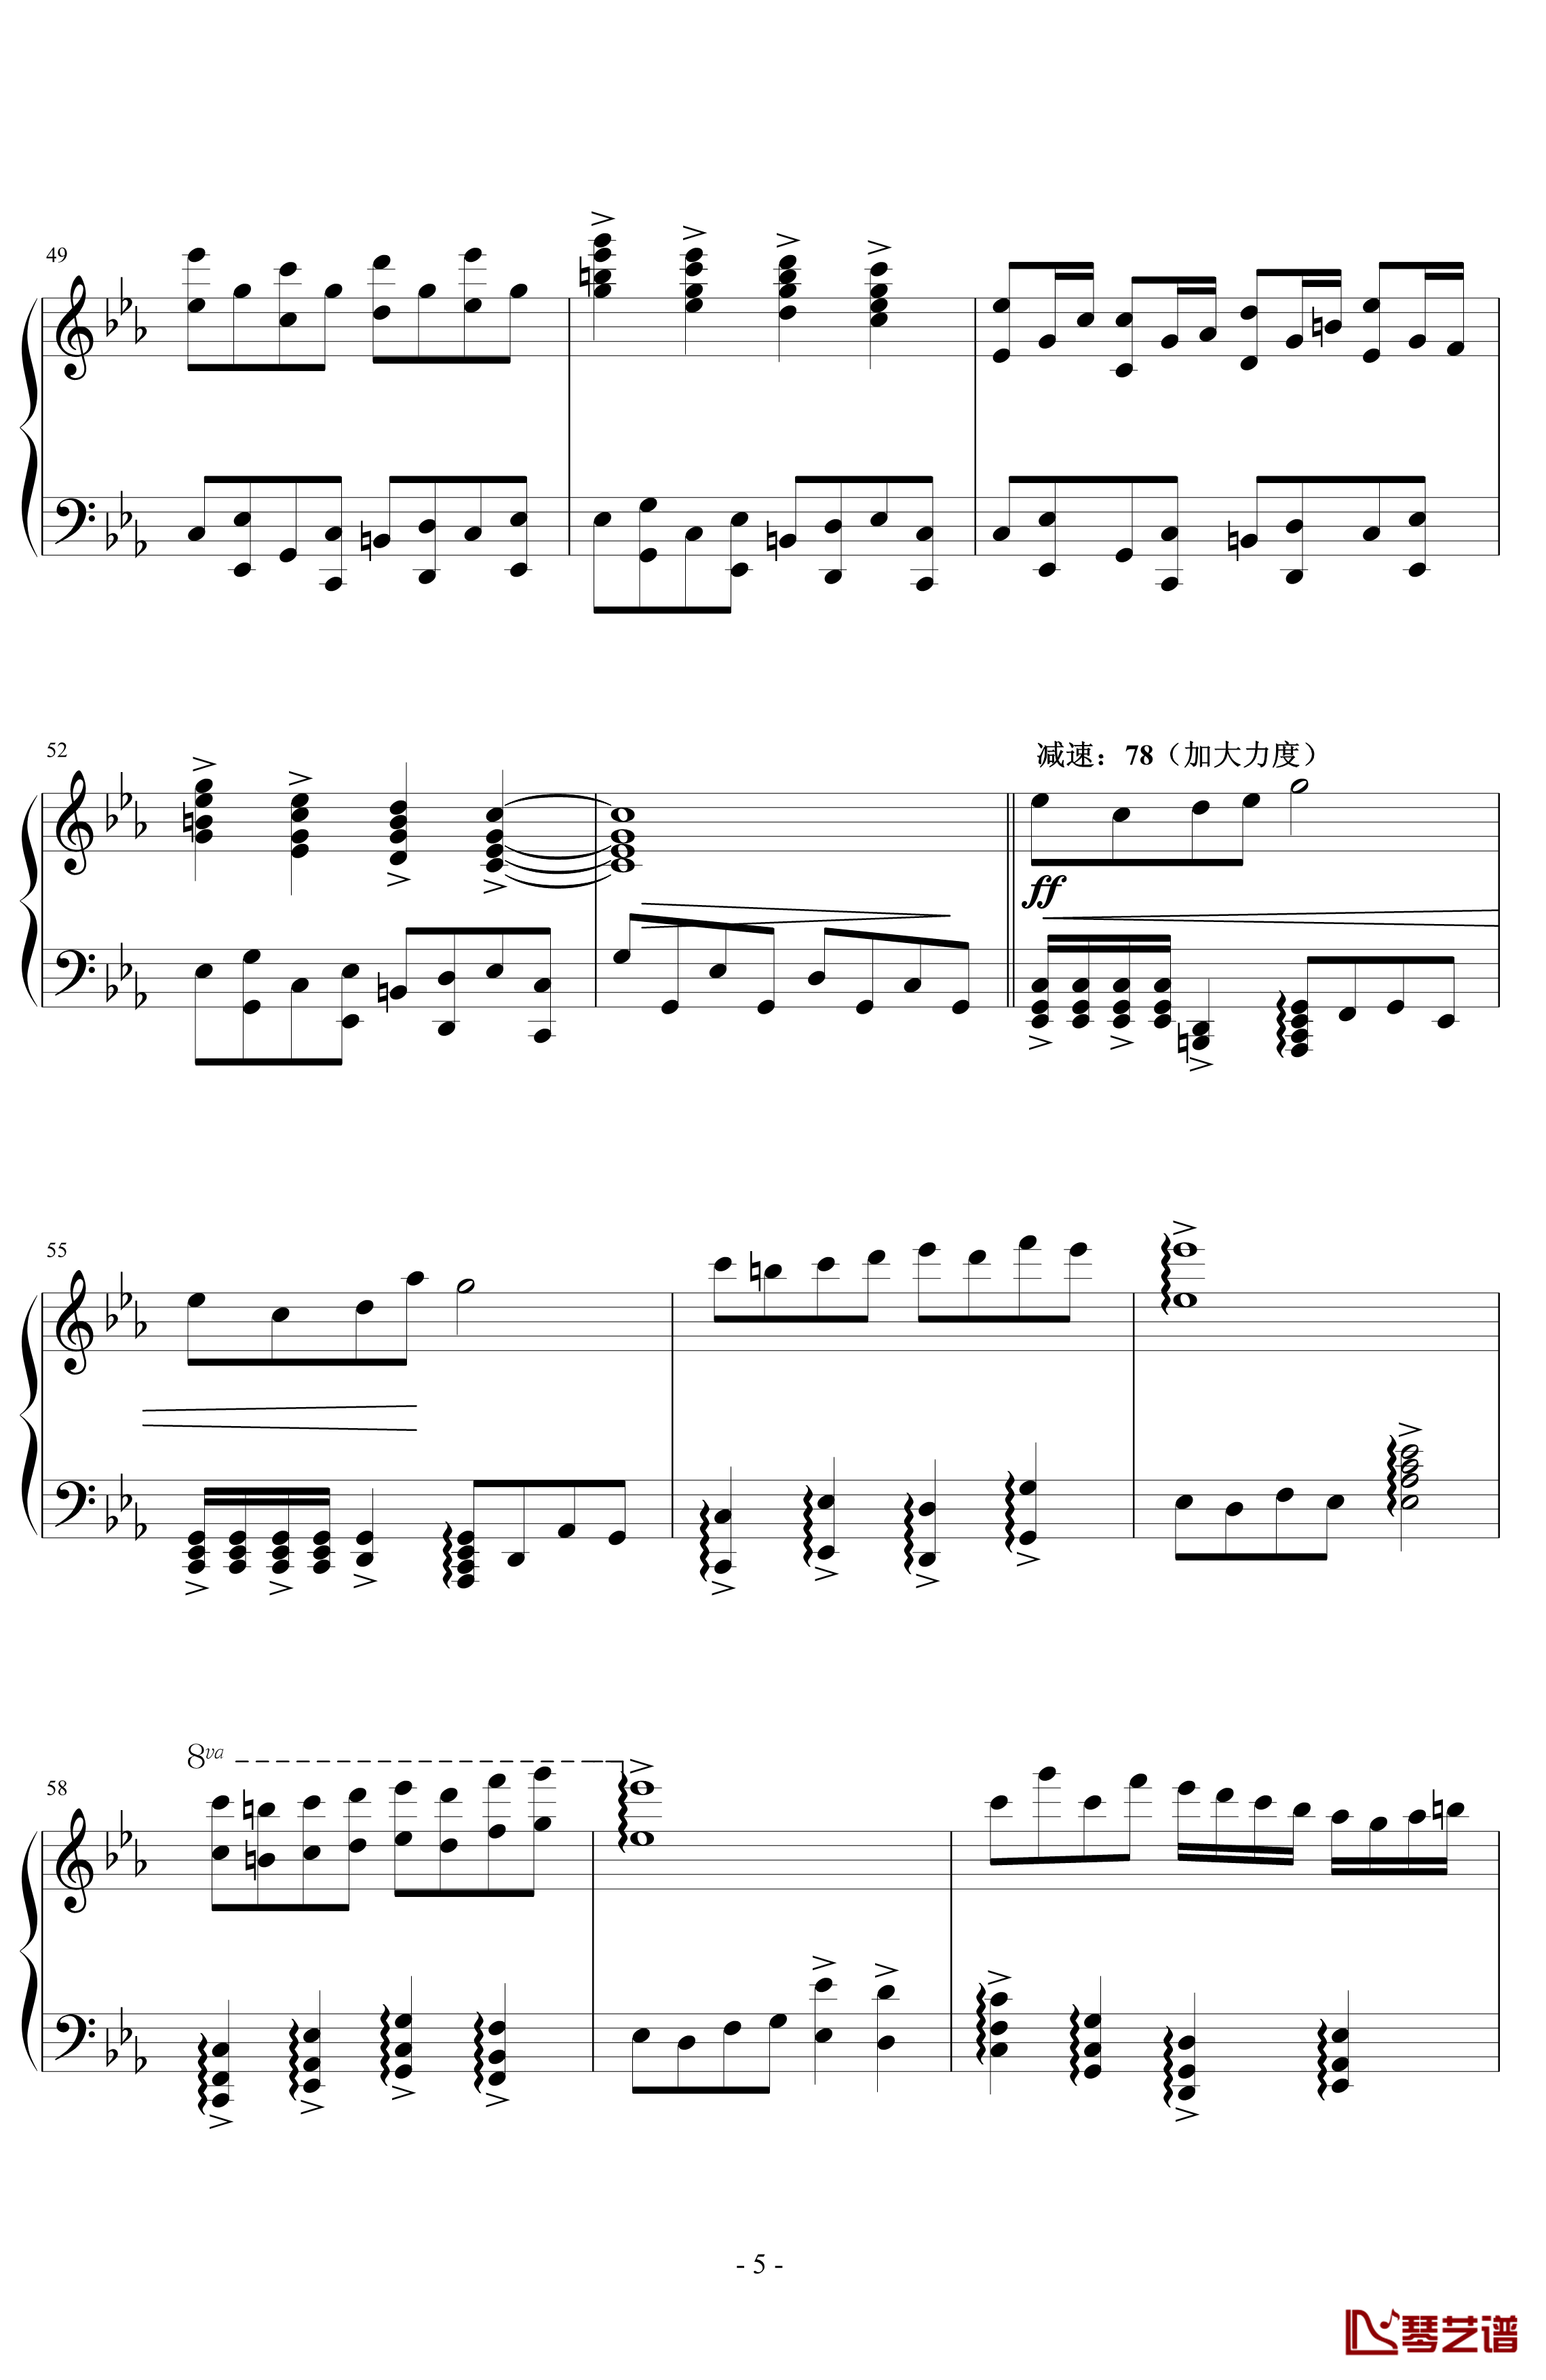 文武贝vs贝多芬钢琴谱-瞎闹版-蕾诺丝5